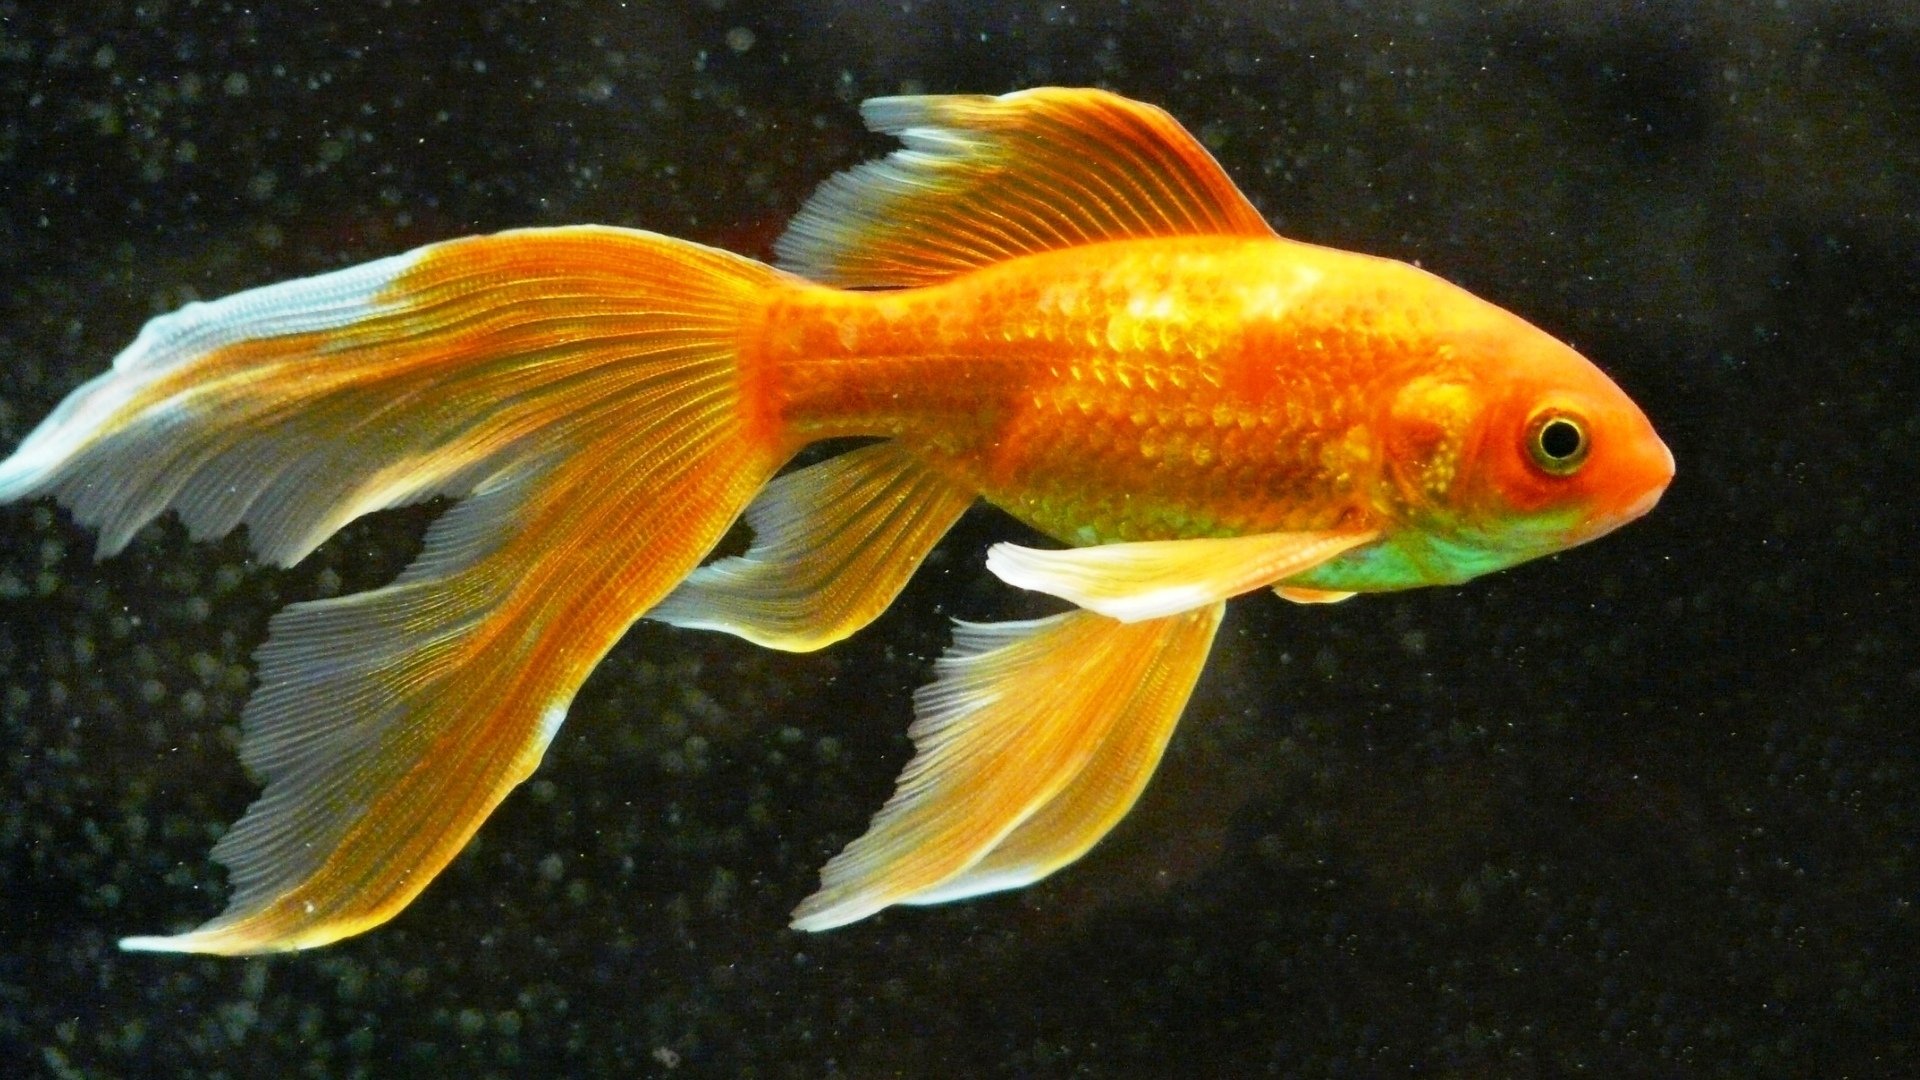 Аквариумные рыбки на т. Комета вуалехвост. Золотая рыбка вуалехвост. Золотая рыбка Комета вуалехвост. Золотые аквариумные рыбки Комета.